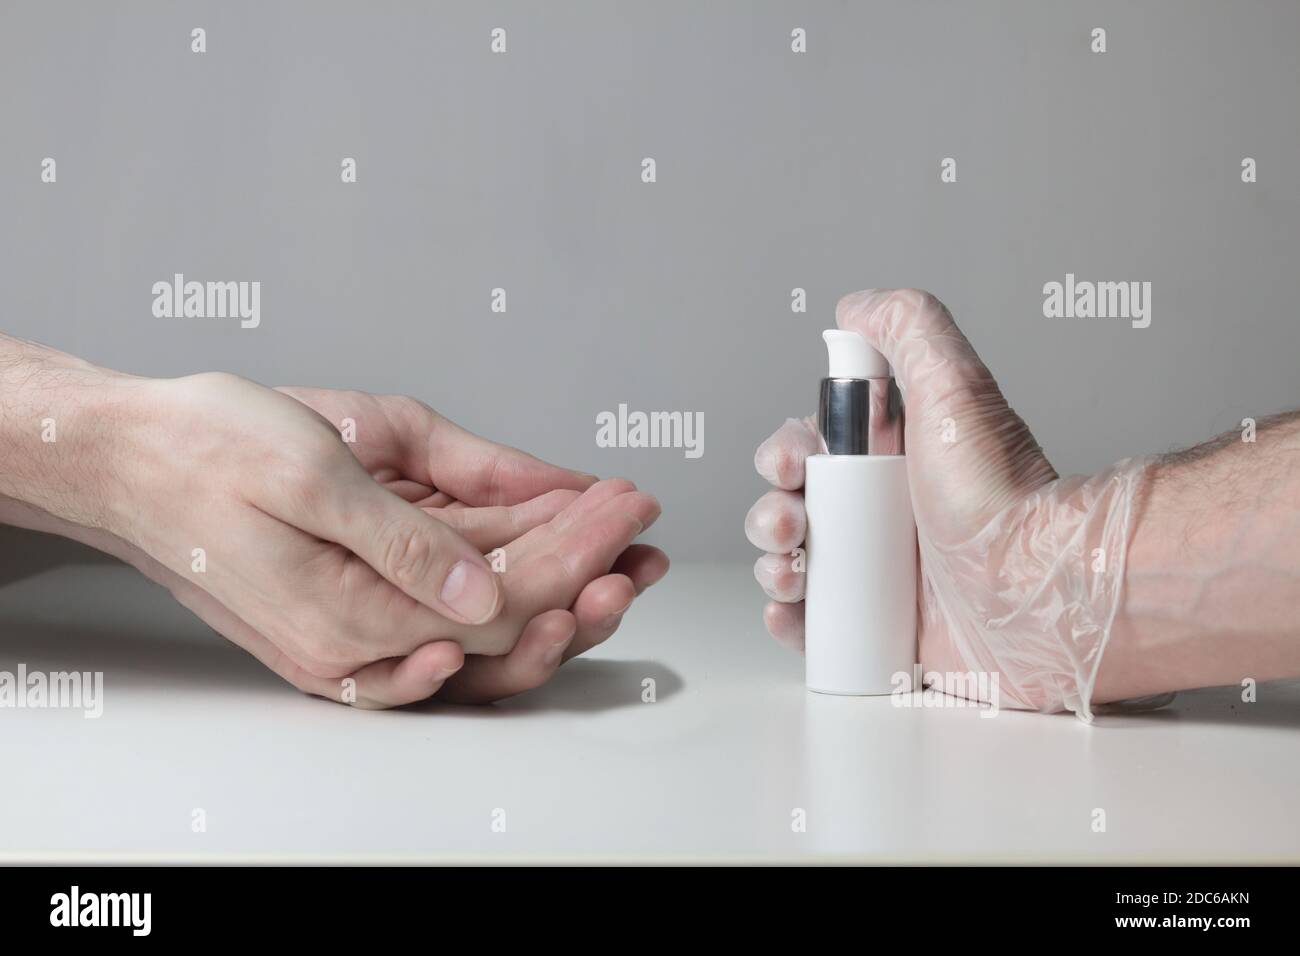 Un paio di mani aspettano di essere disinfettate da un gel idroalcolico pressato da una mano protetta da guanti semitrasparenti su fondo bianco. Foto Stock